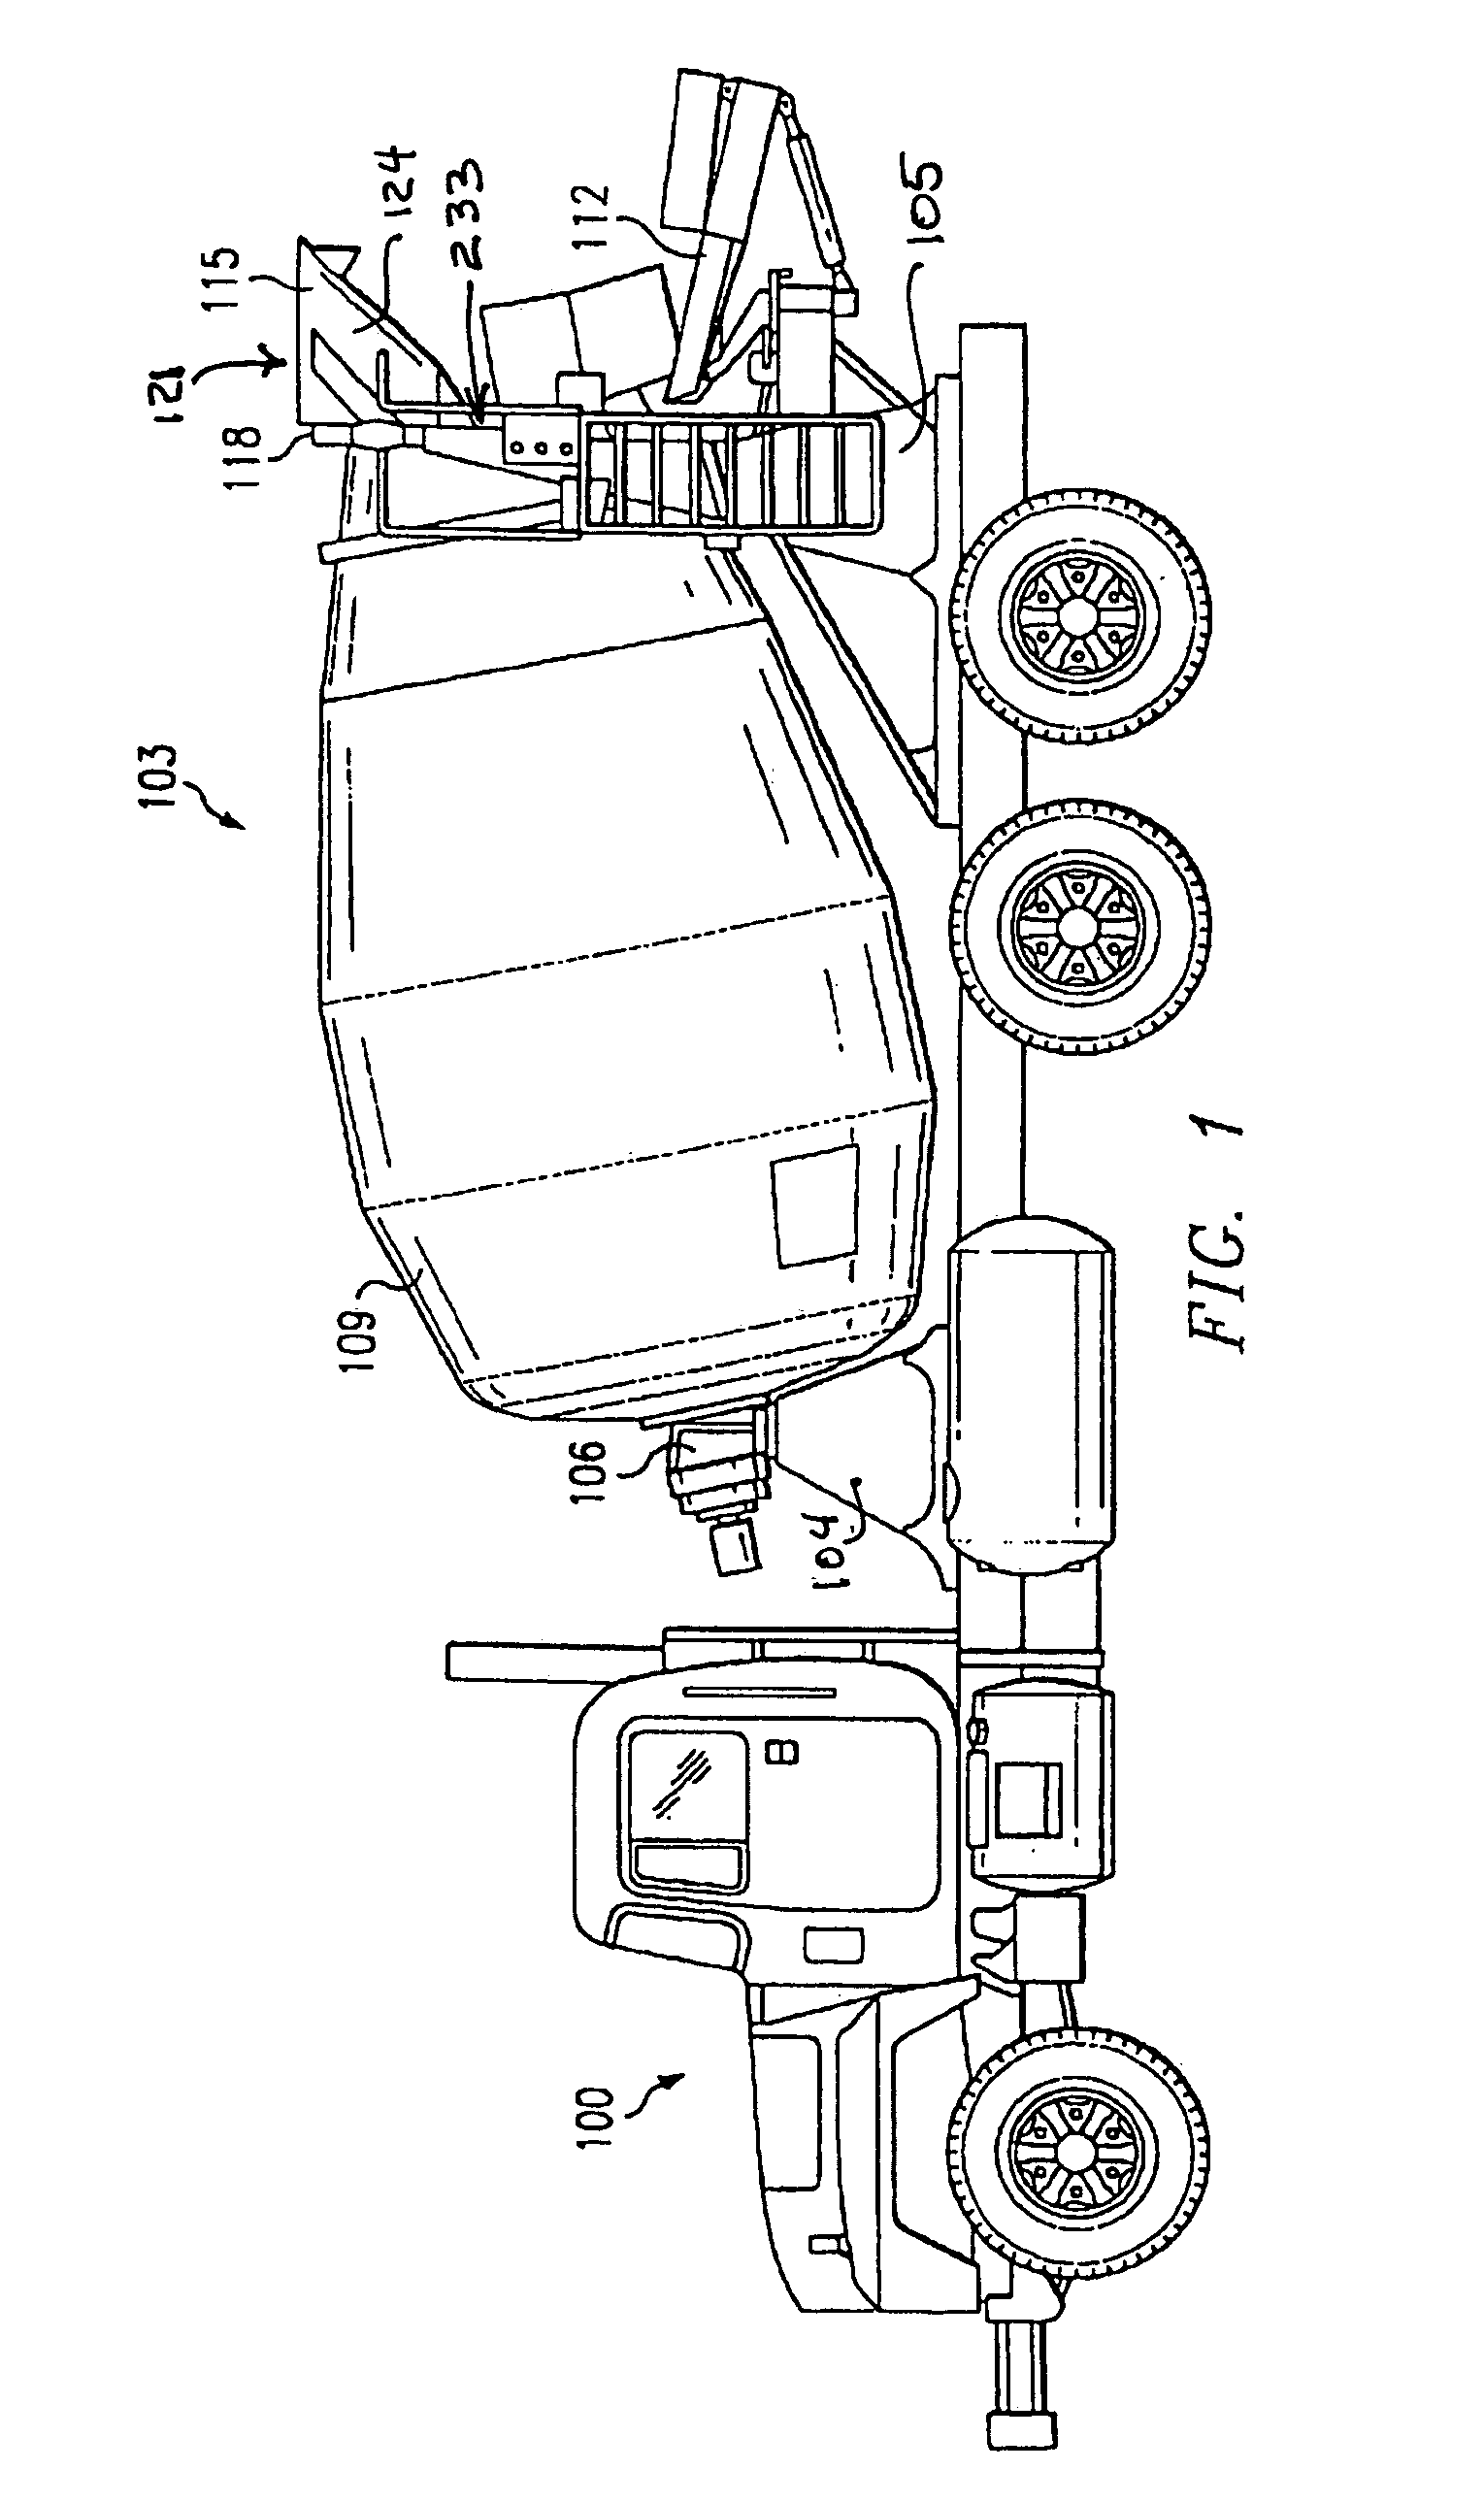 Environmental shield for a truck mounted concrete mixer